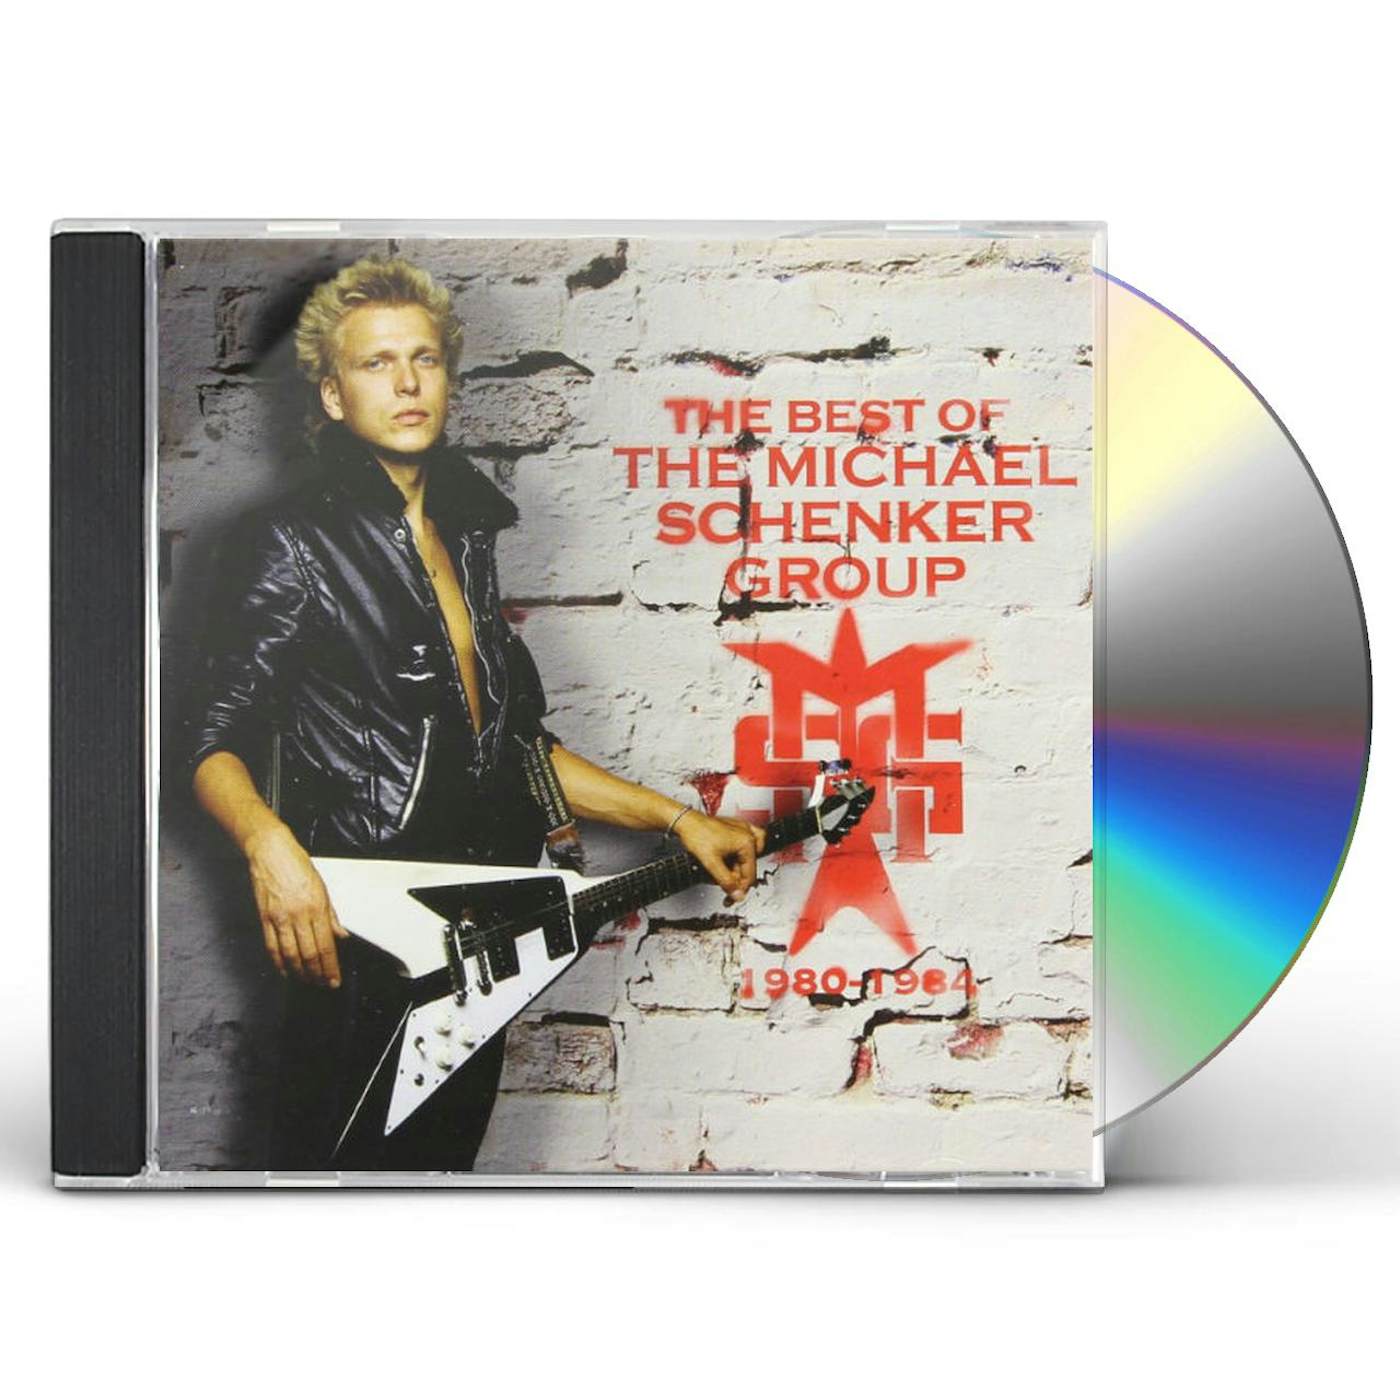 Michael Schenker Group BEST OF 1980 - 1984 CD